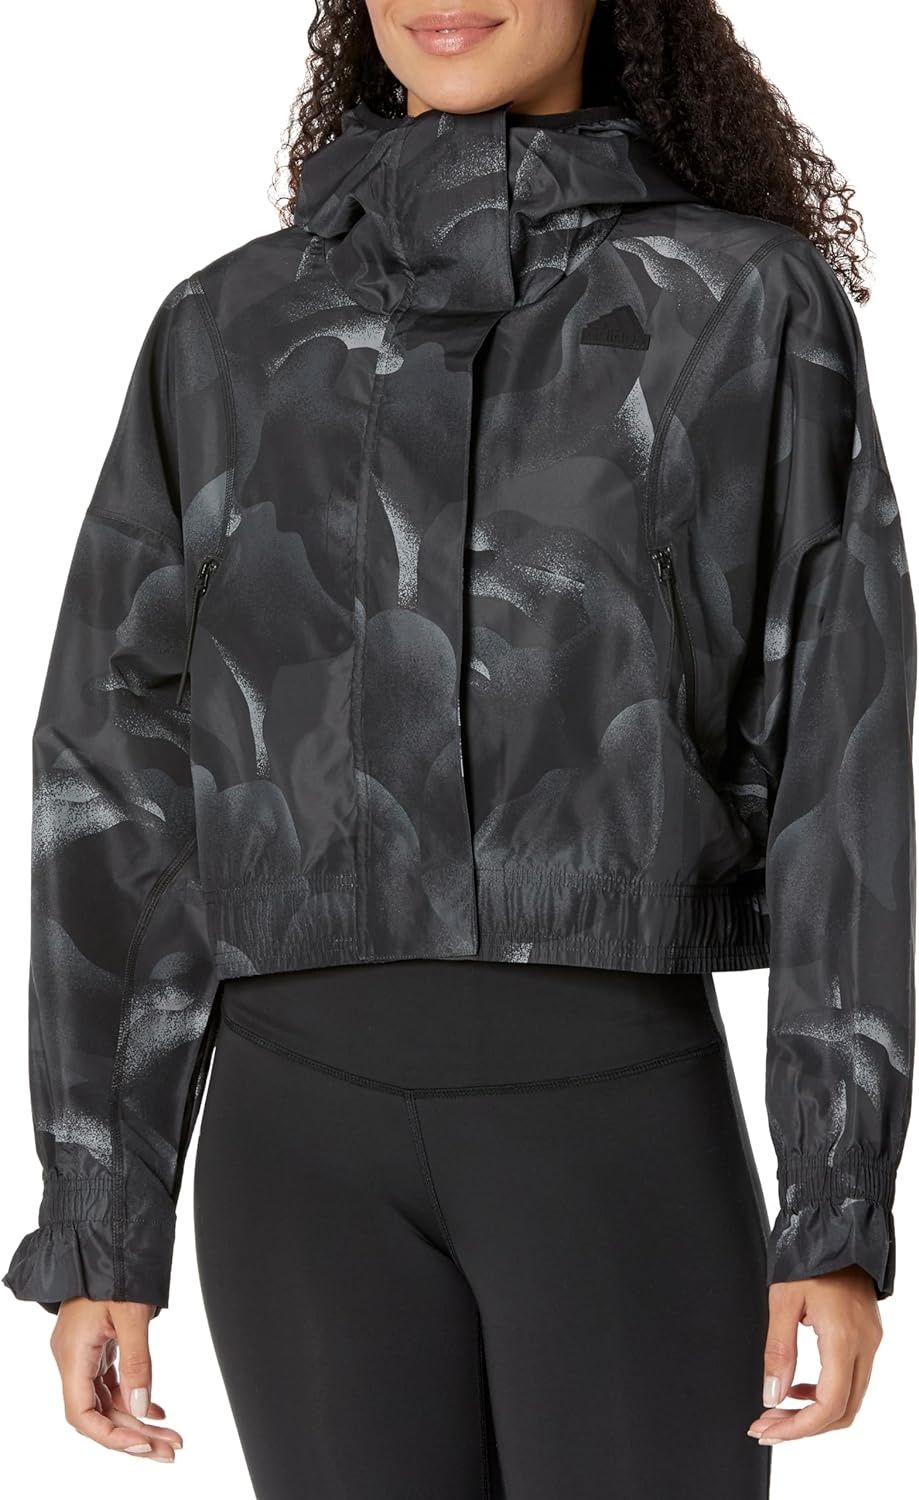 Жіноча спортивна куртка-кофта, Adidas XS